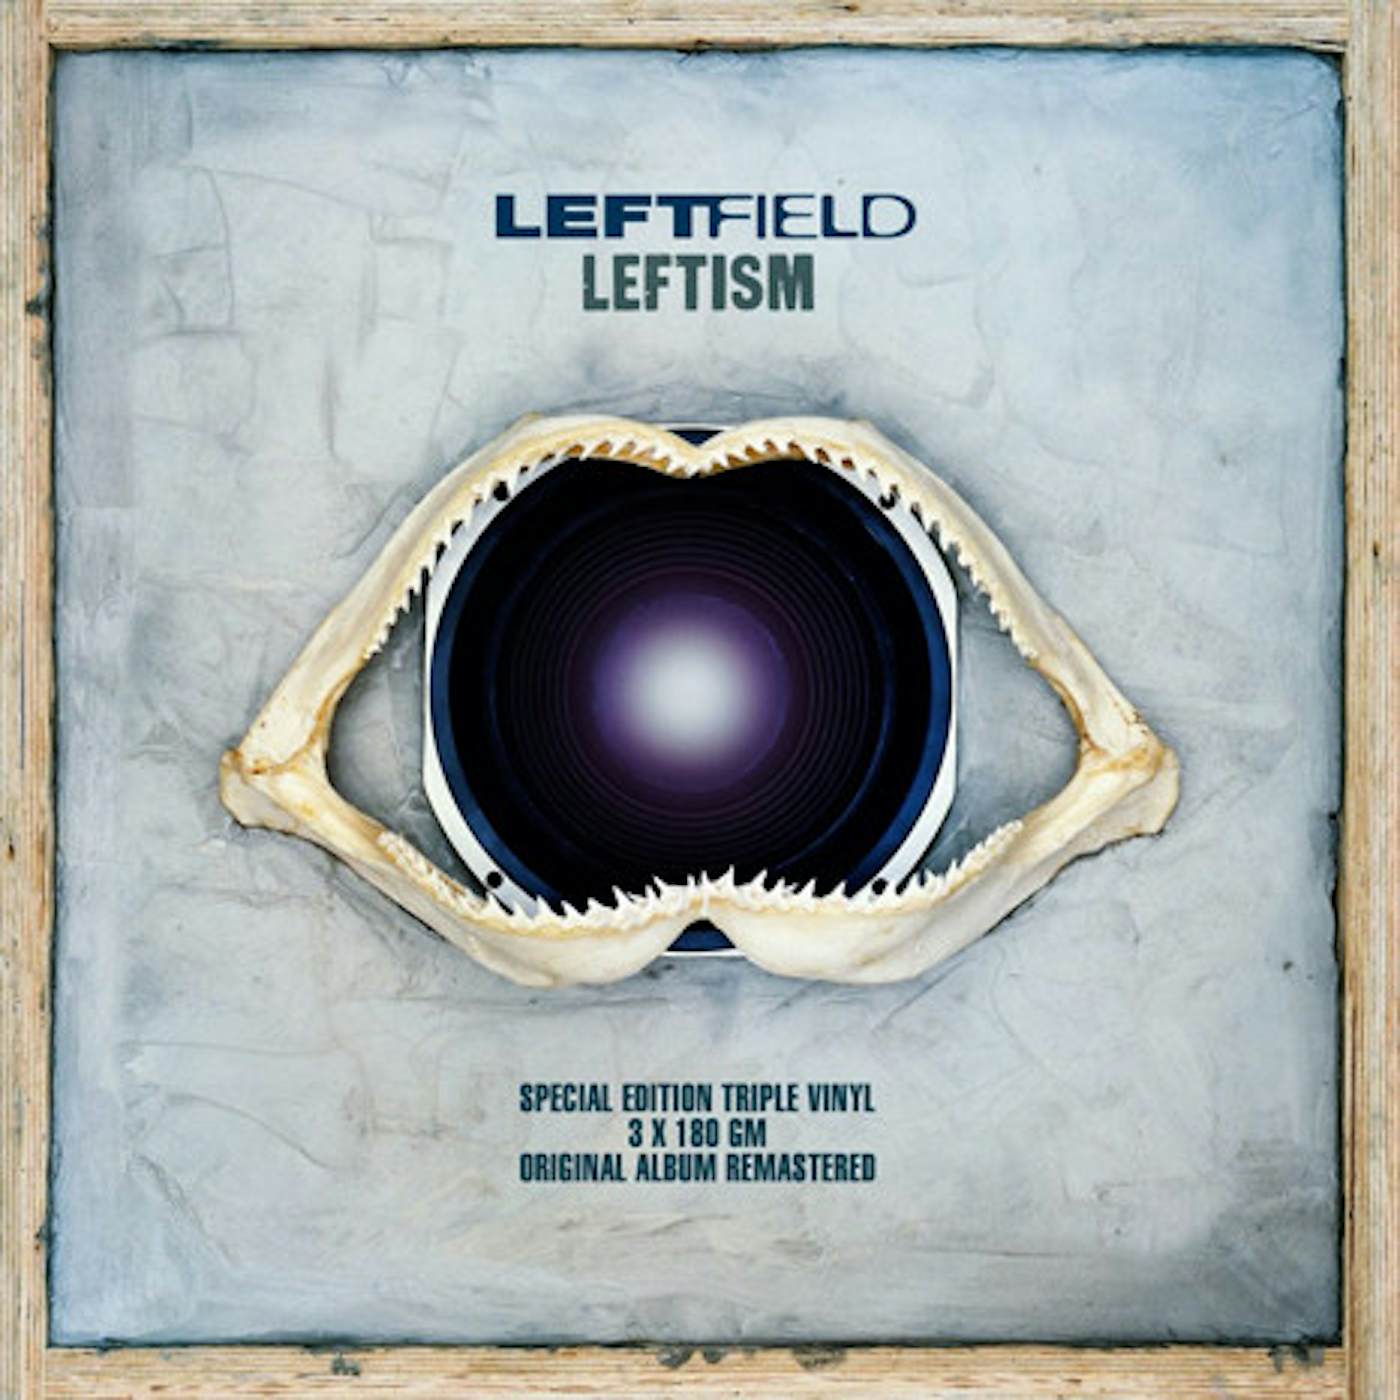 Leftfield Leftism 22 Vinyl Record